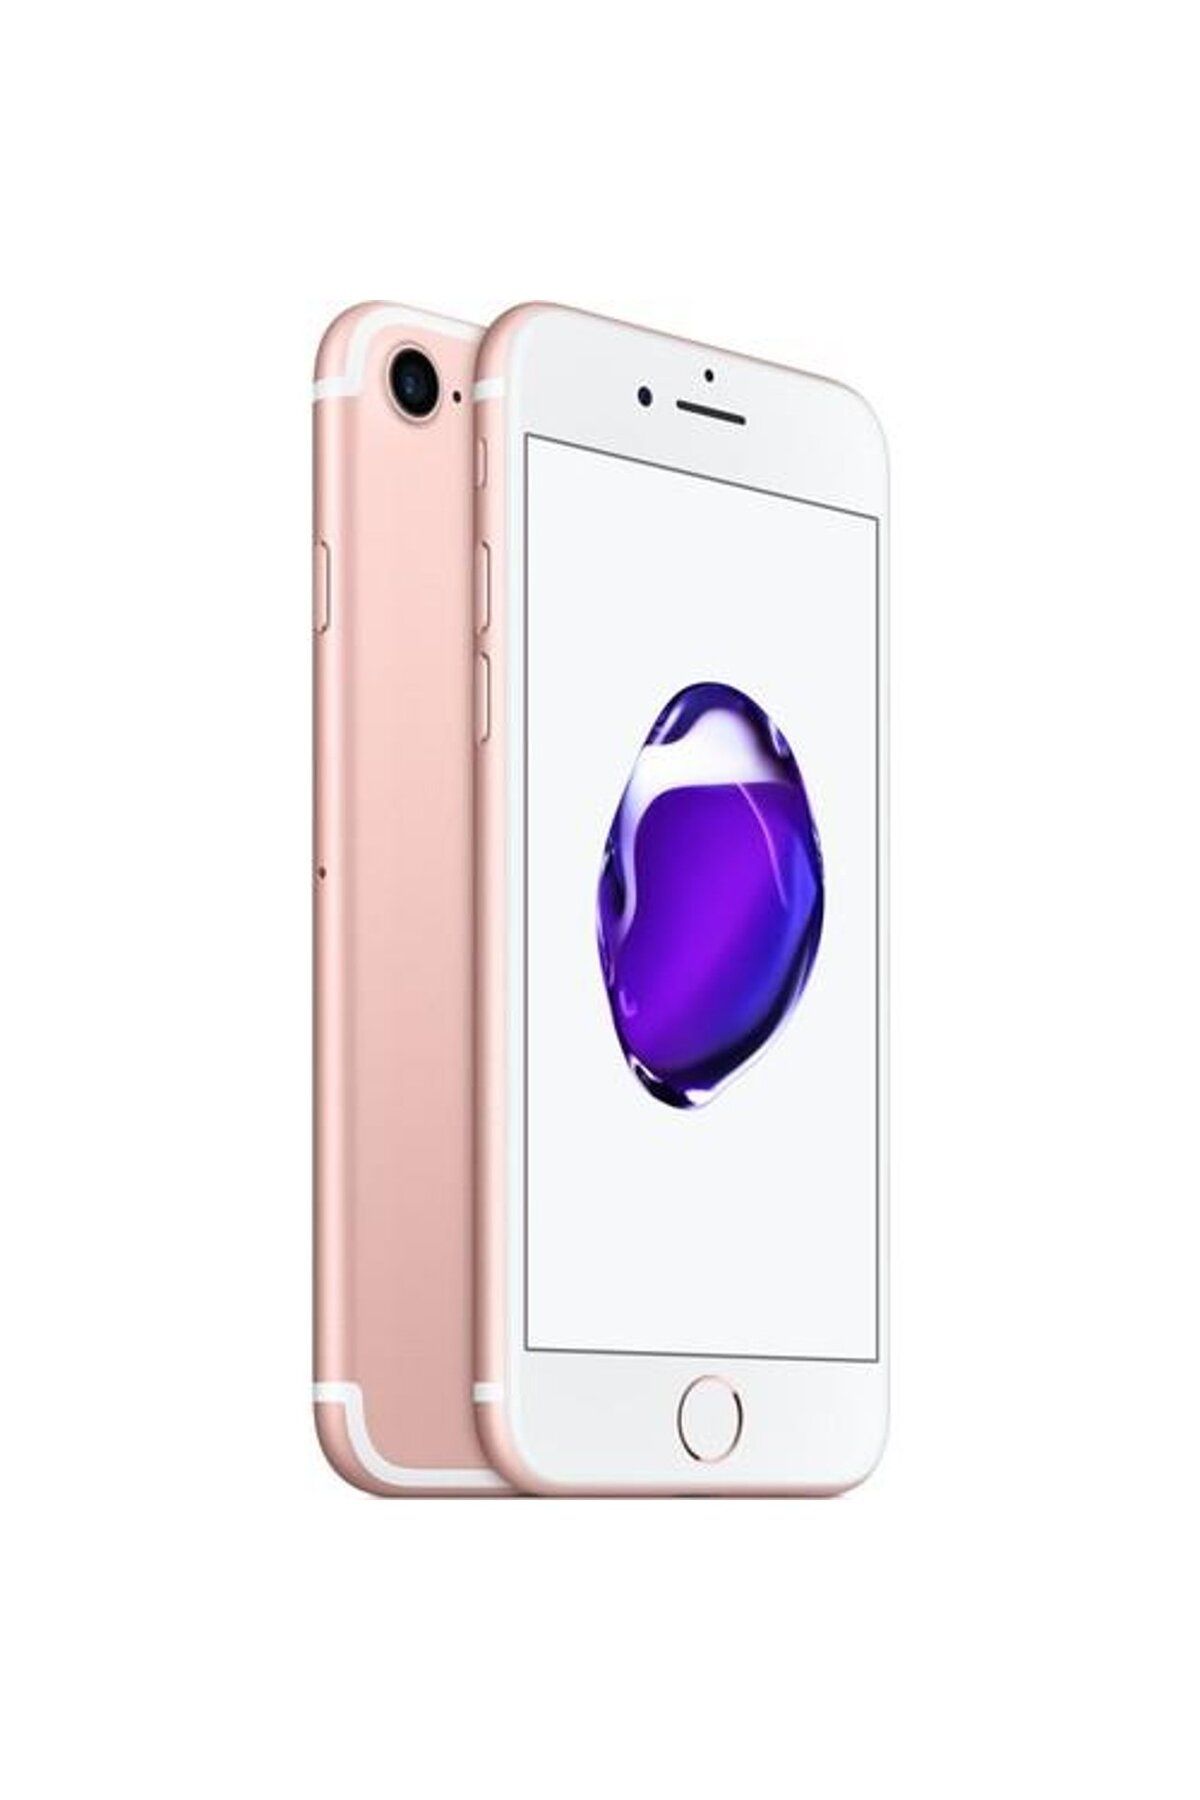 Apple Yenilenmiş iPhone 7 32GB Rose Gold C Kalite